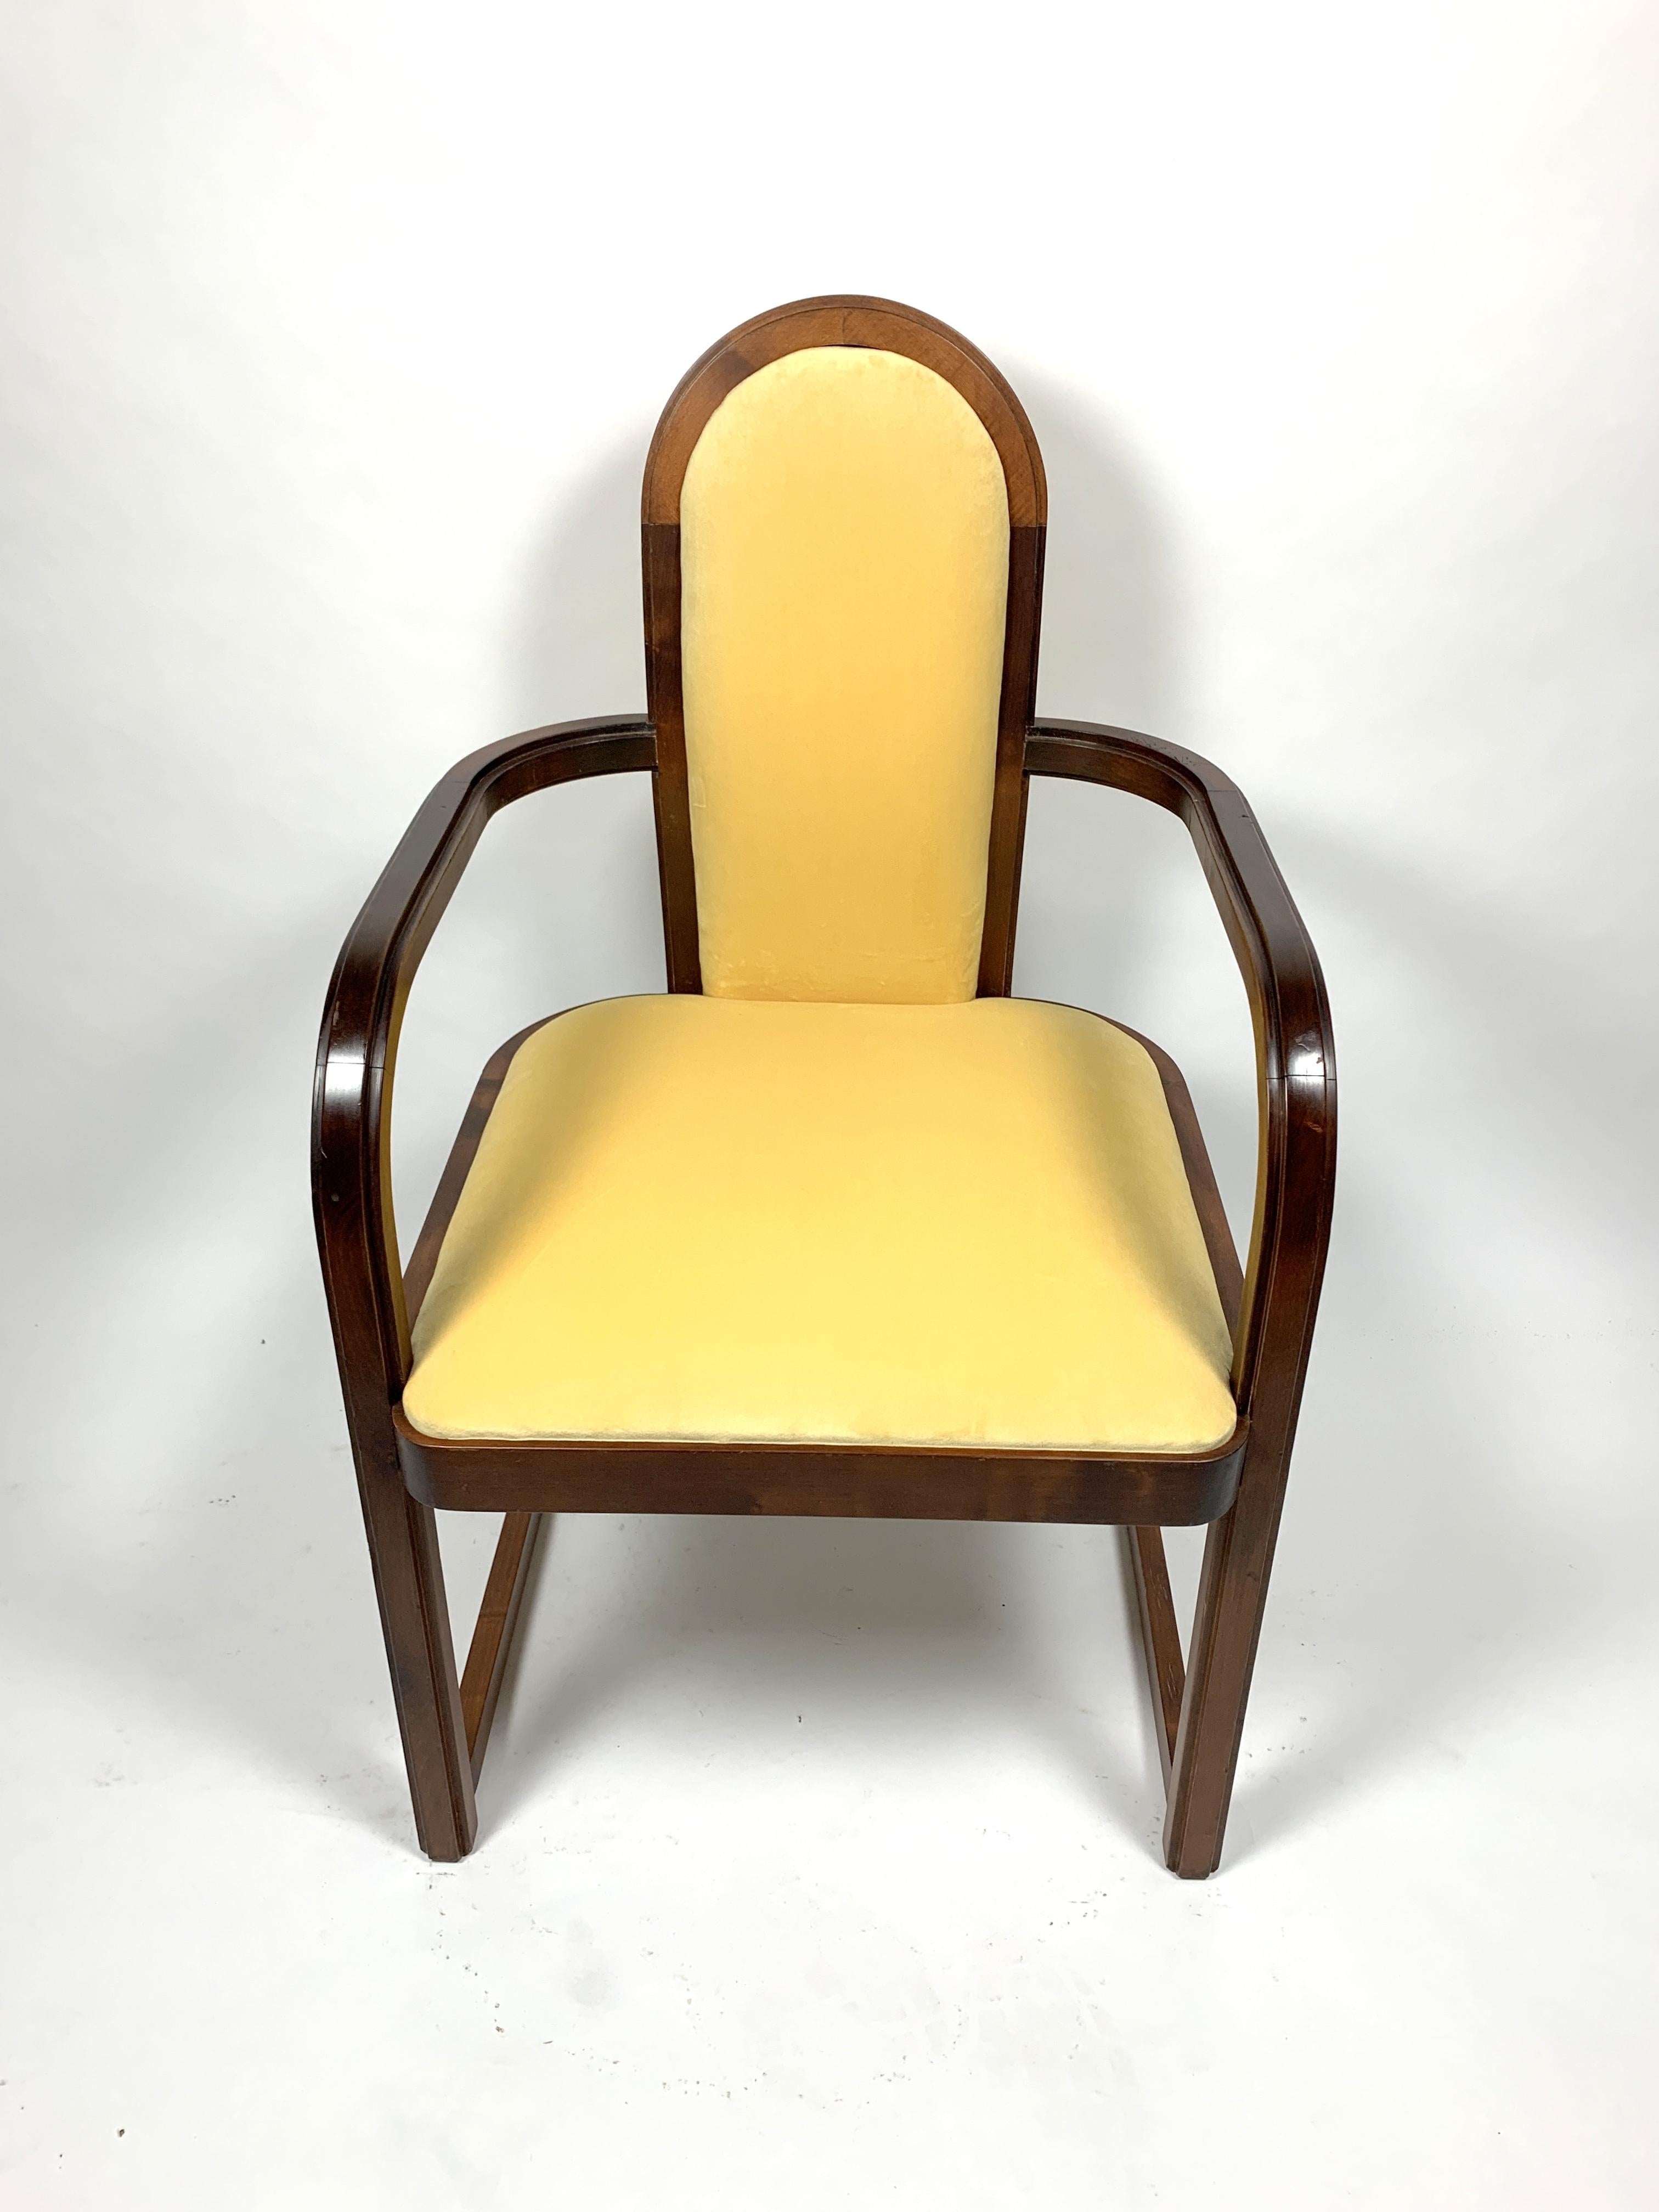 Dieser Satz von 4 Art Deco Sesseln wurde in den 1930er Jahren aus Buchenholz hergestellt, vollständig restauriert und neu gepolstert, der Satz ist in einem hervorragenden Zustand.
    